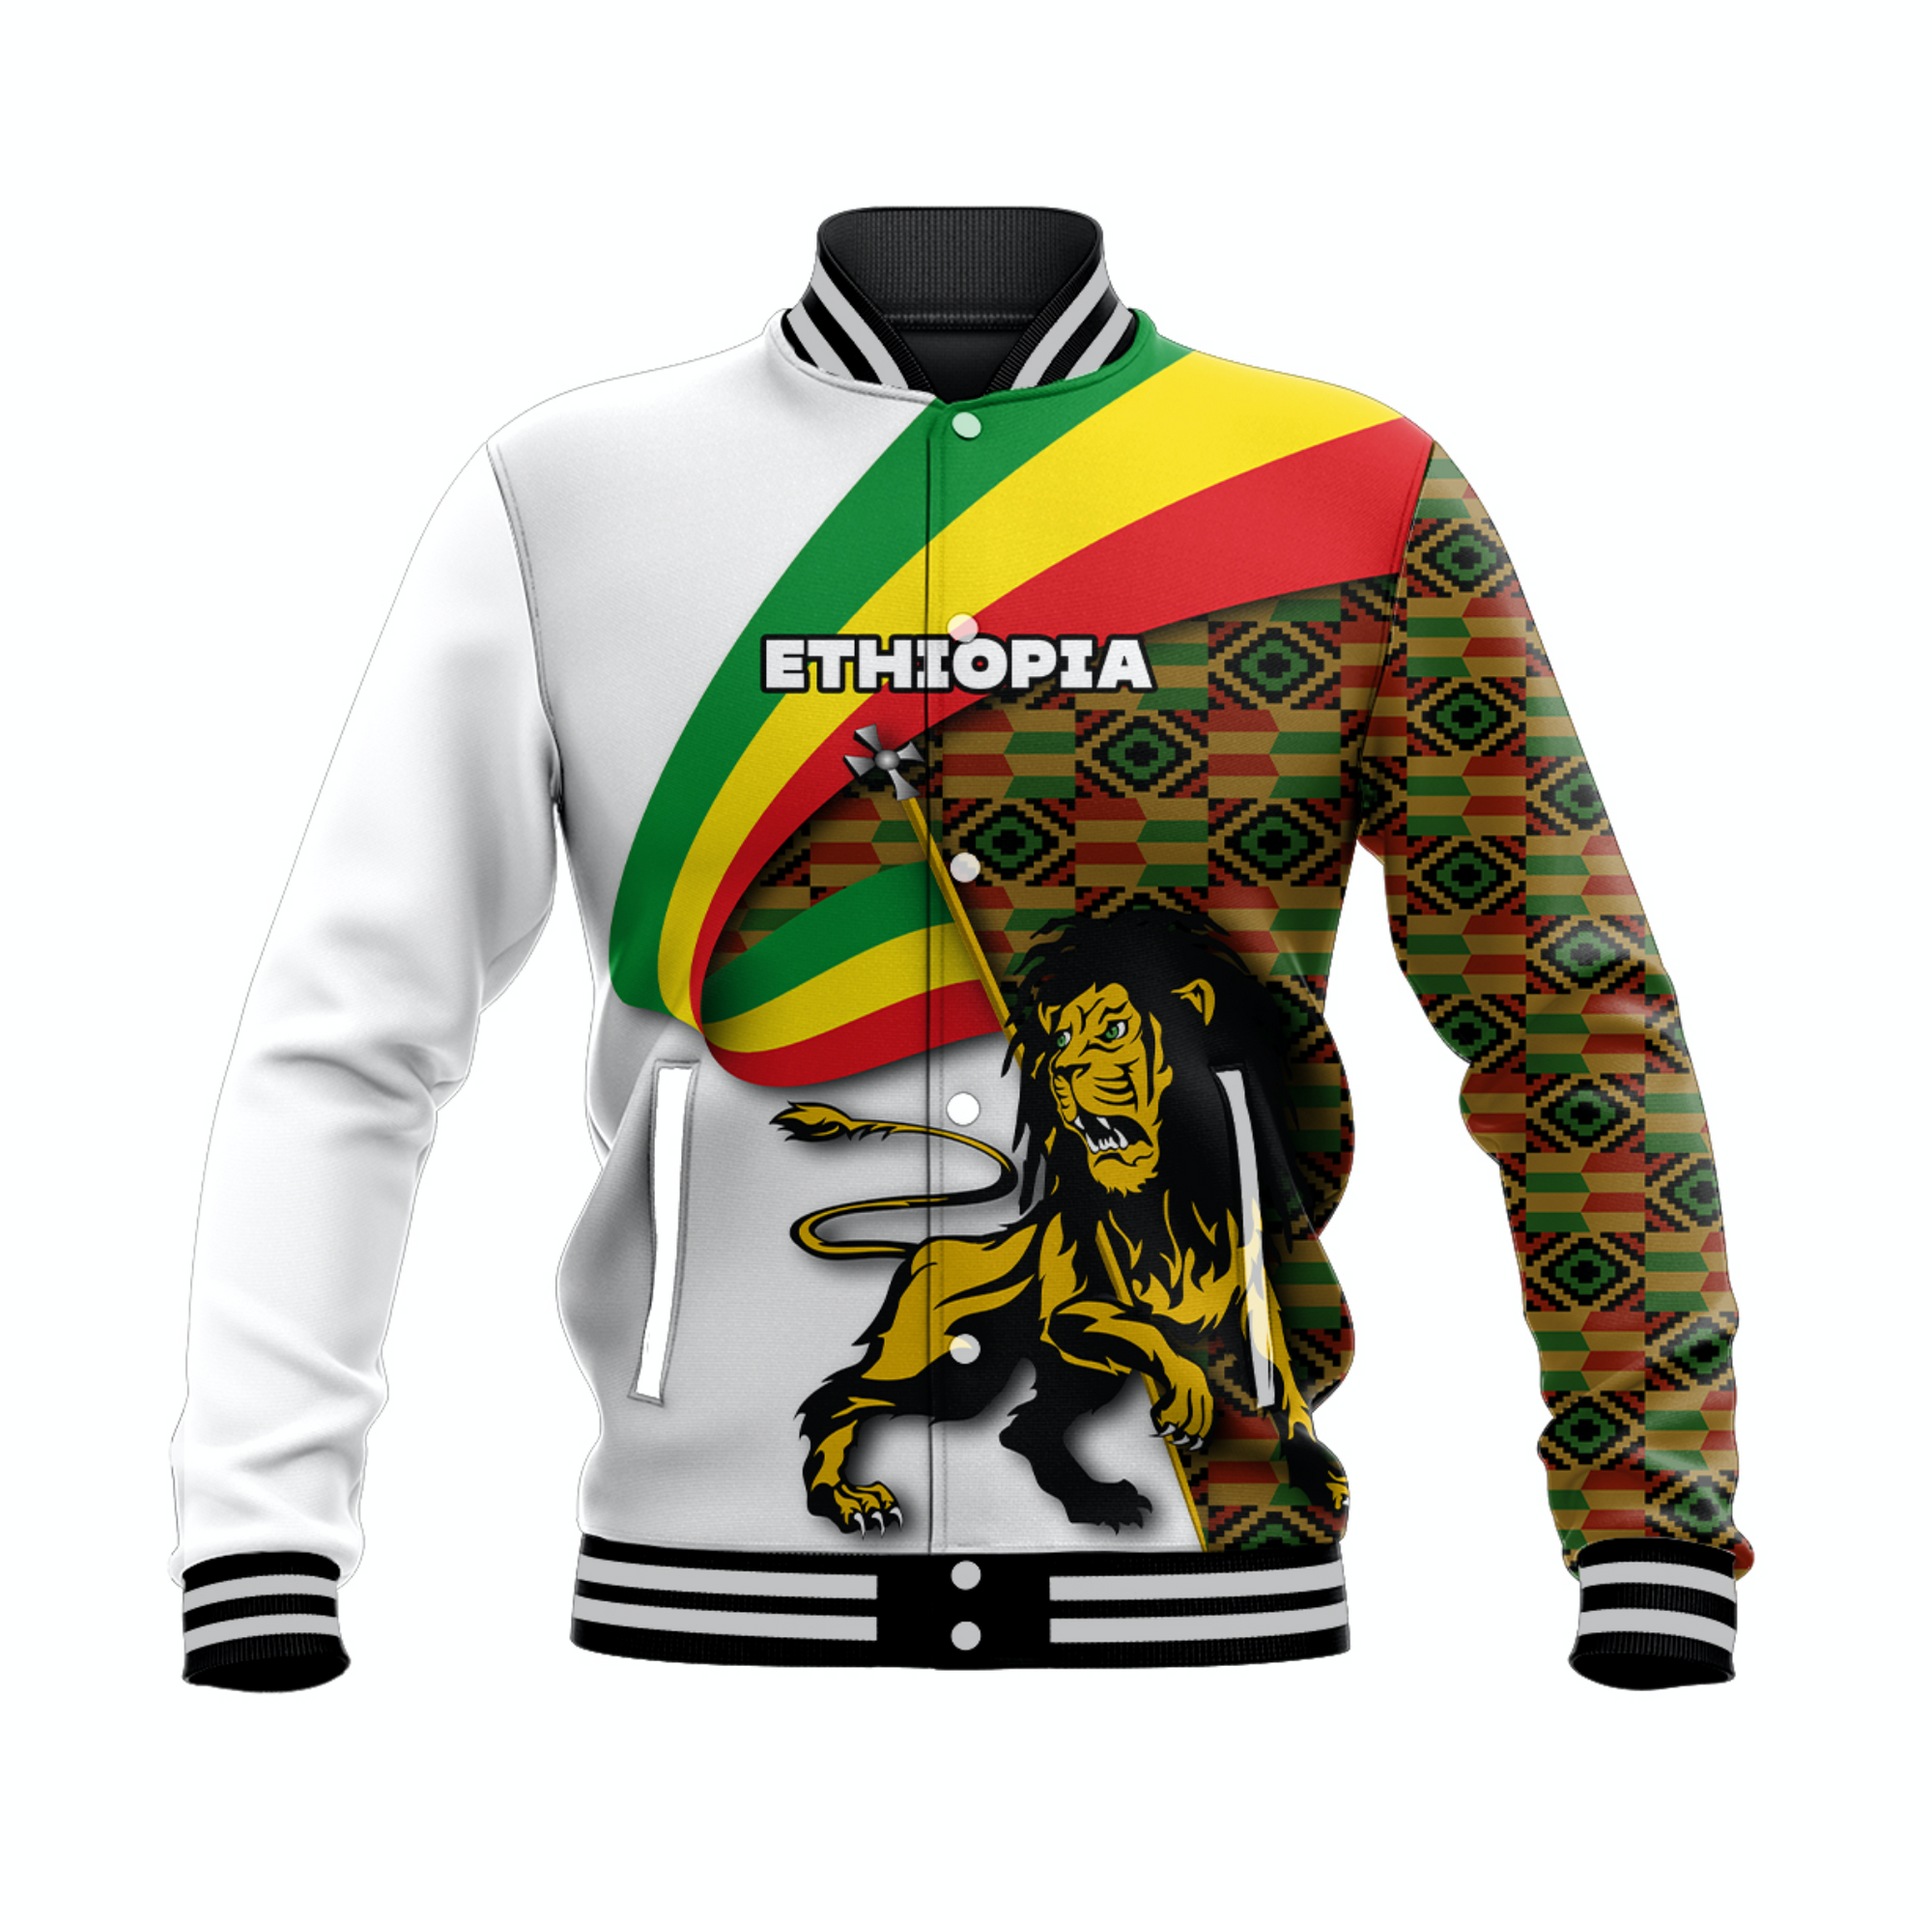 custom-personalised-ethiopia-baseball-jacket-model-style